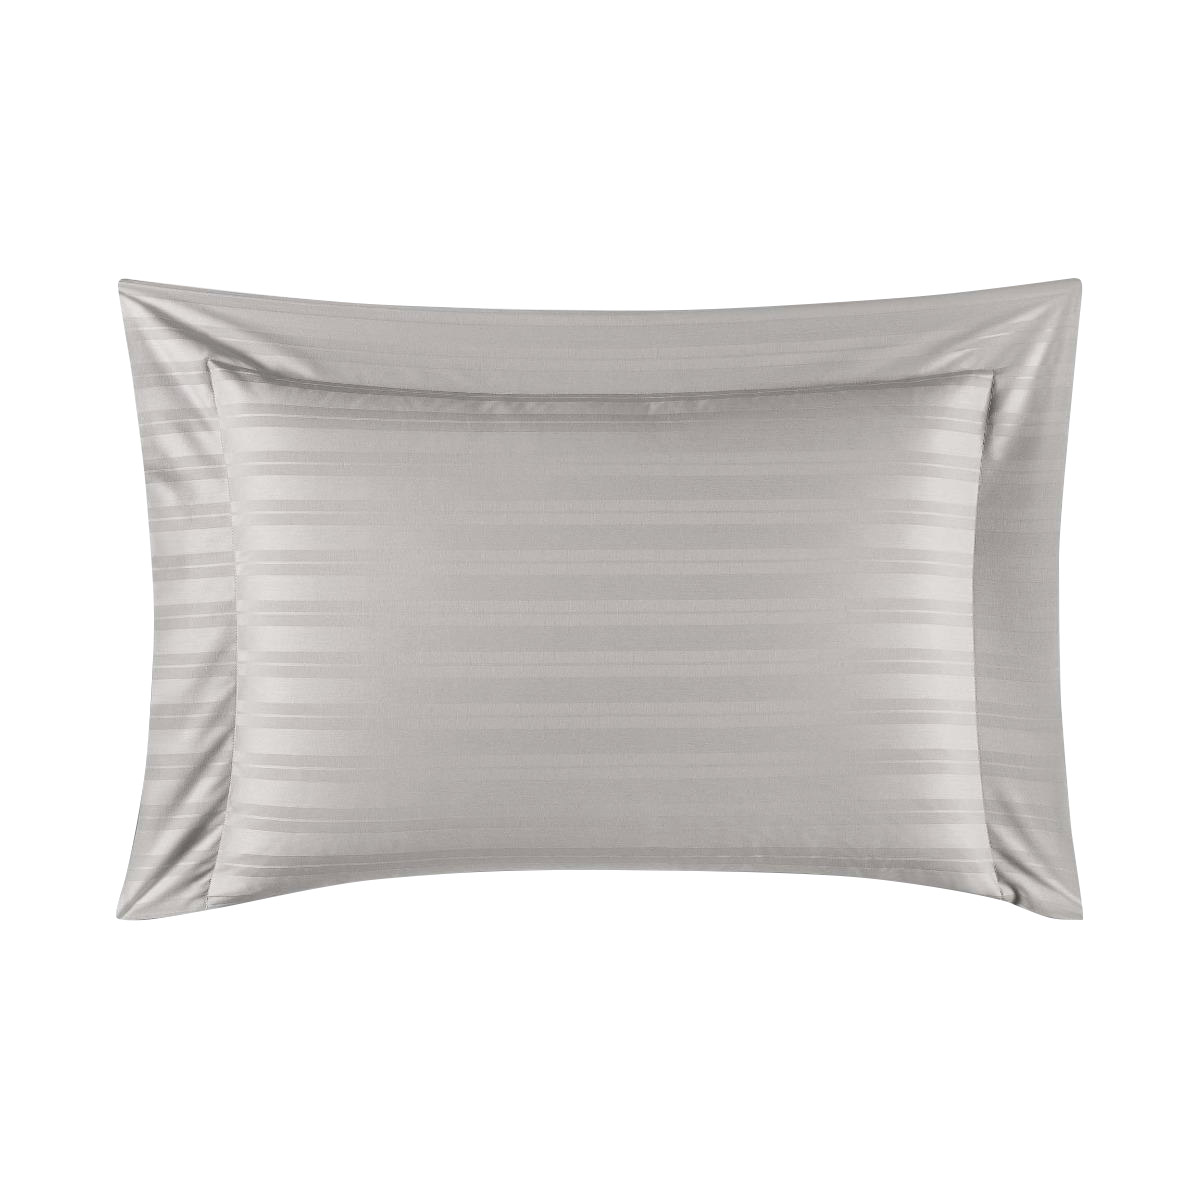 Комплект постельного белья Togas Барнетт Двуспальный кинг сайз светло-серый, размер Двуспальный евро - фото 7